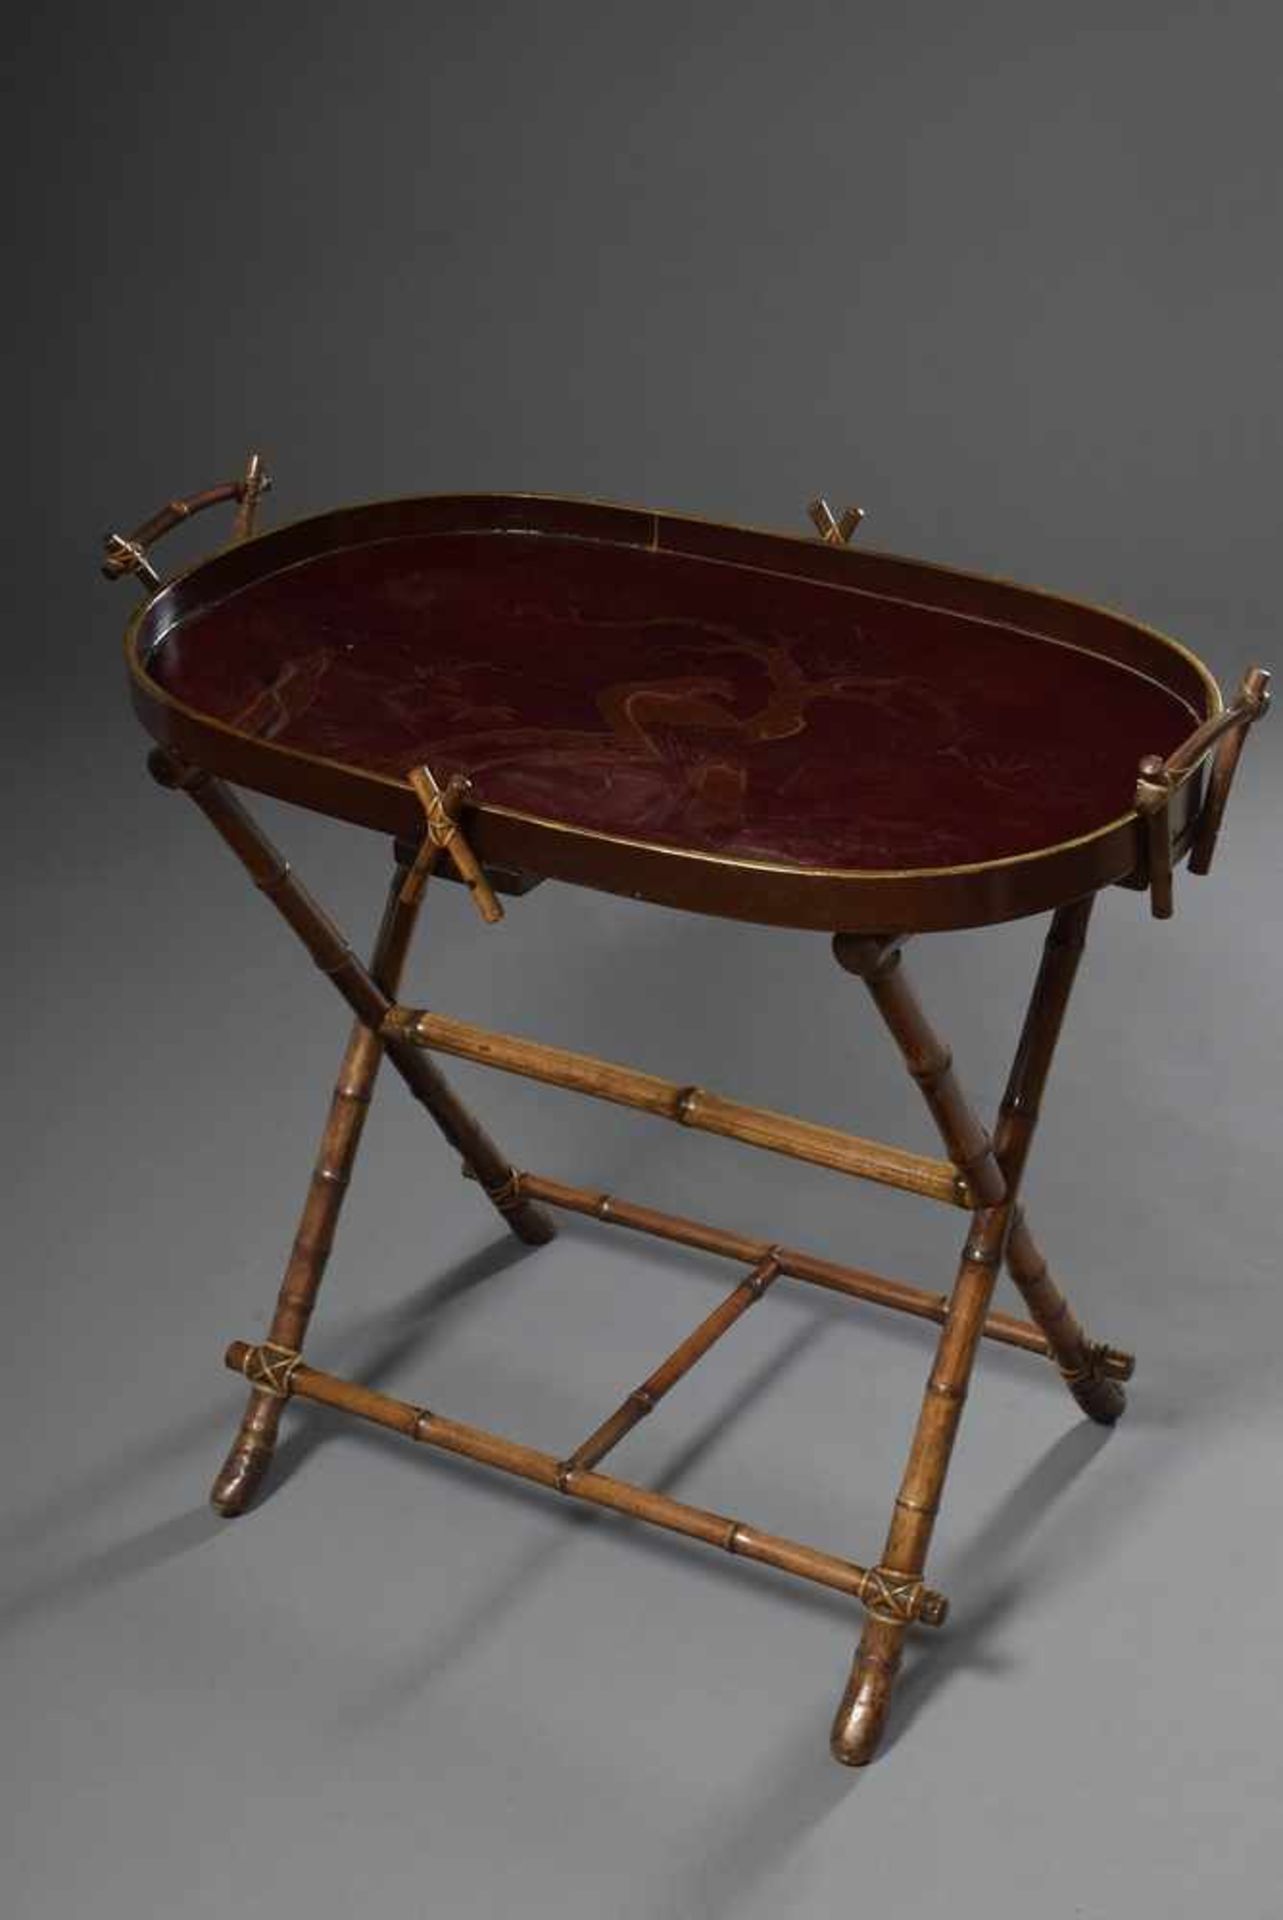 Tablett-Tisch mit Bambus Trompe l'oeil Gestell und Rotlack Tablett "Pfau in Landschaft", um 1900,